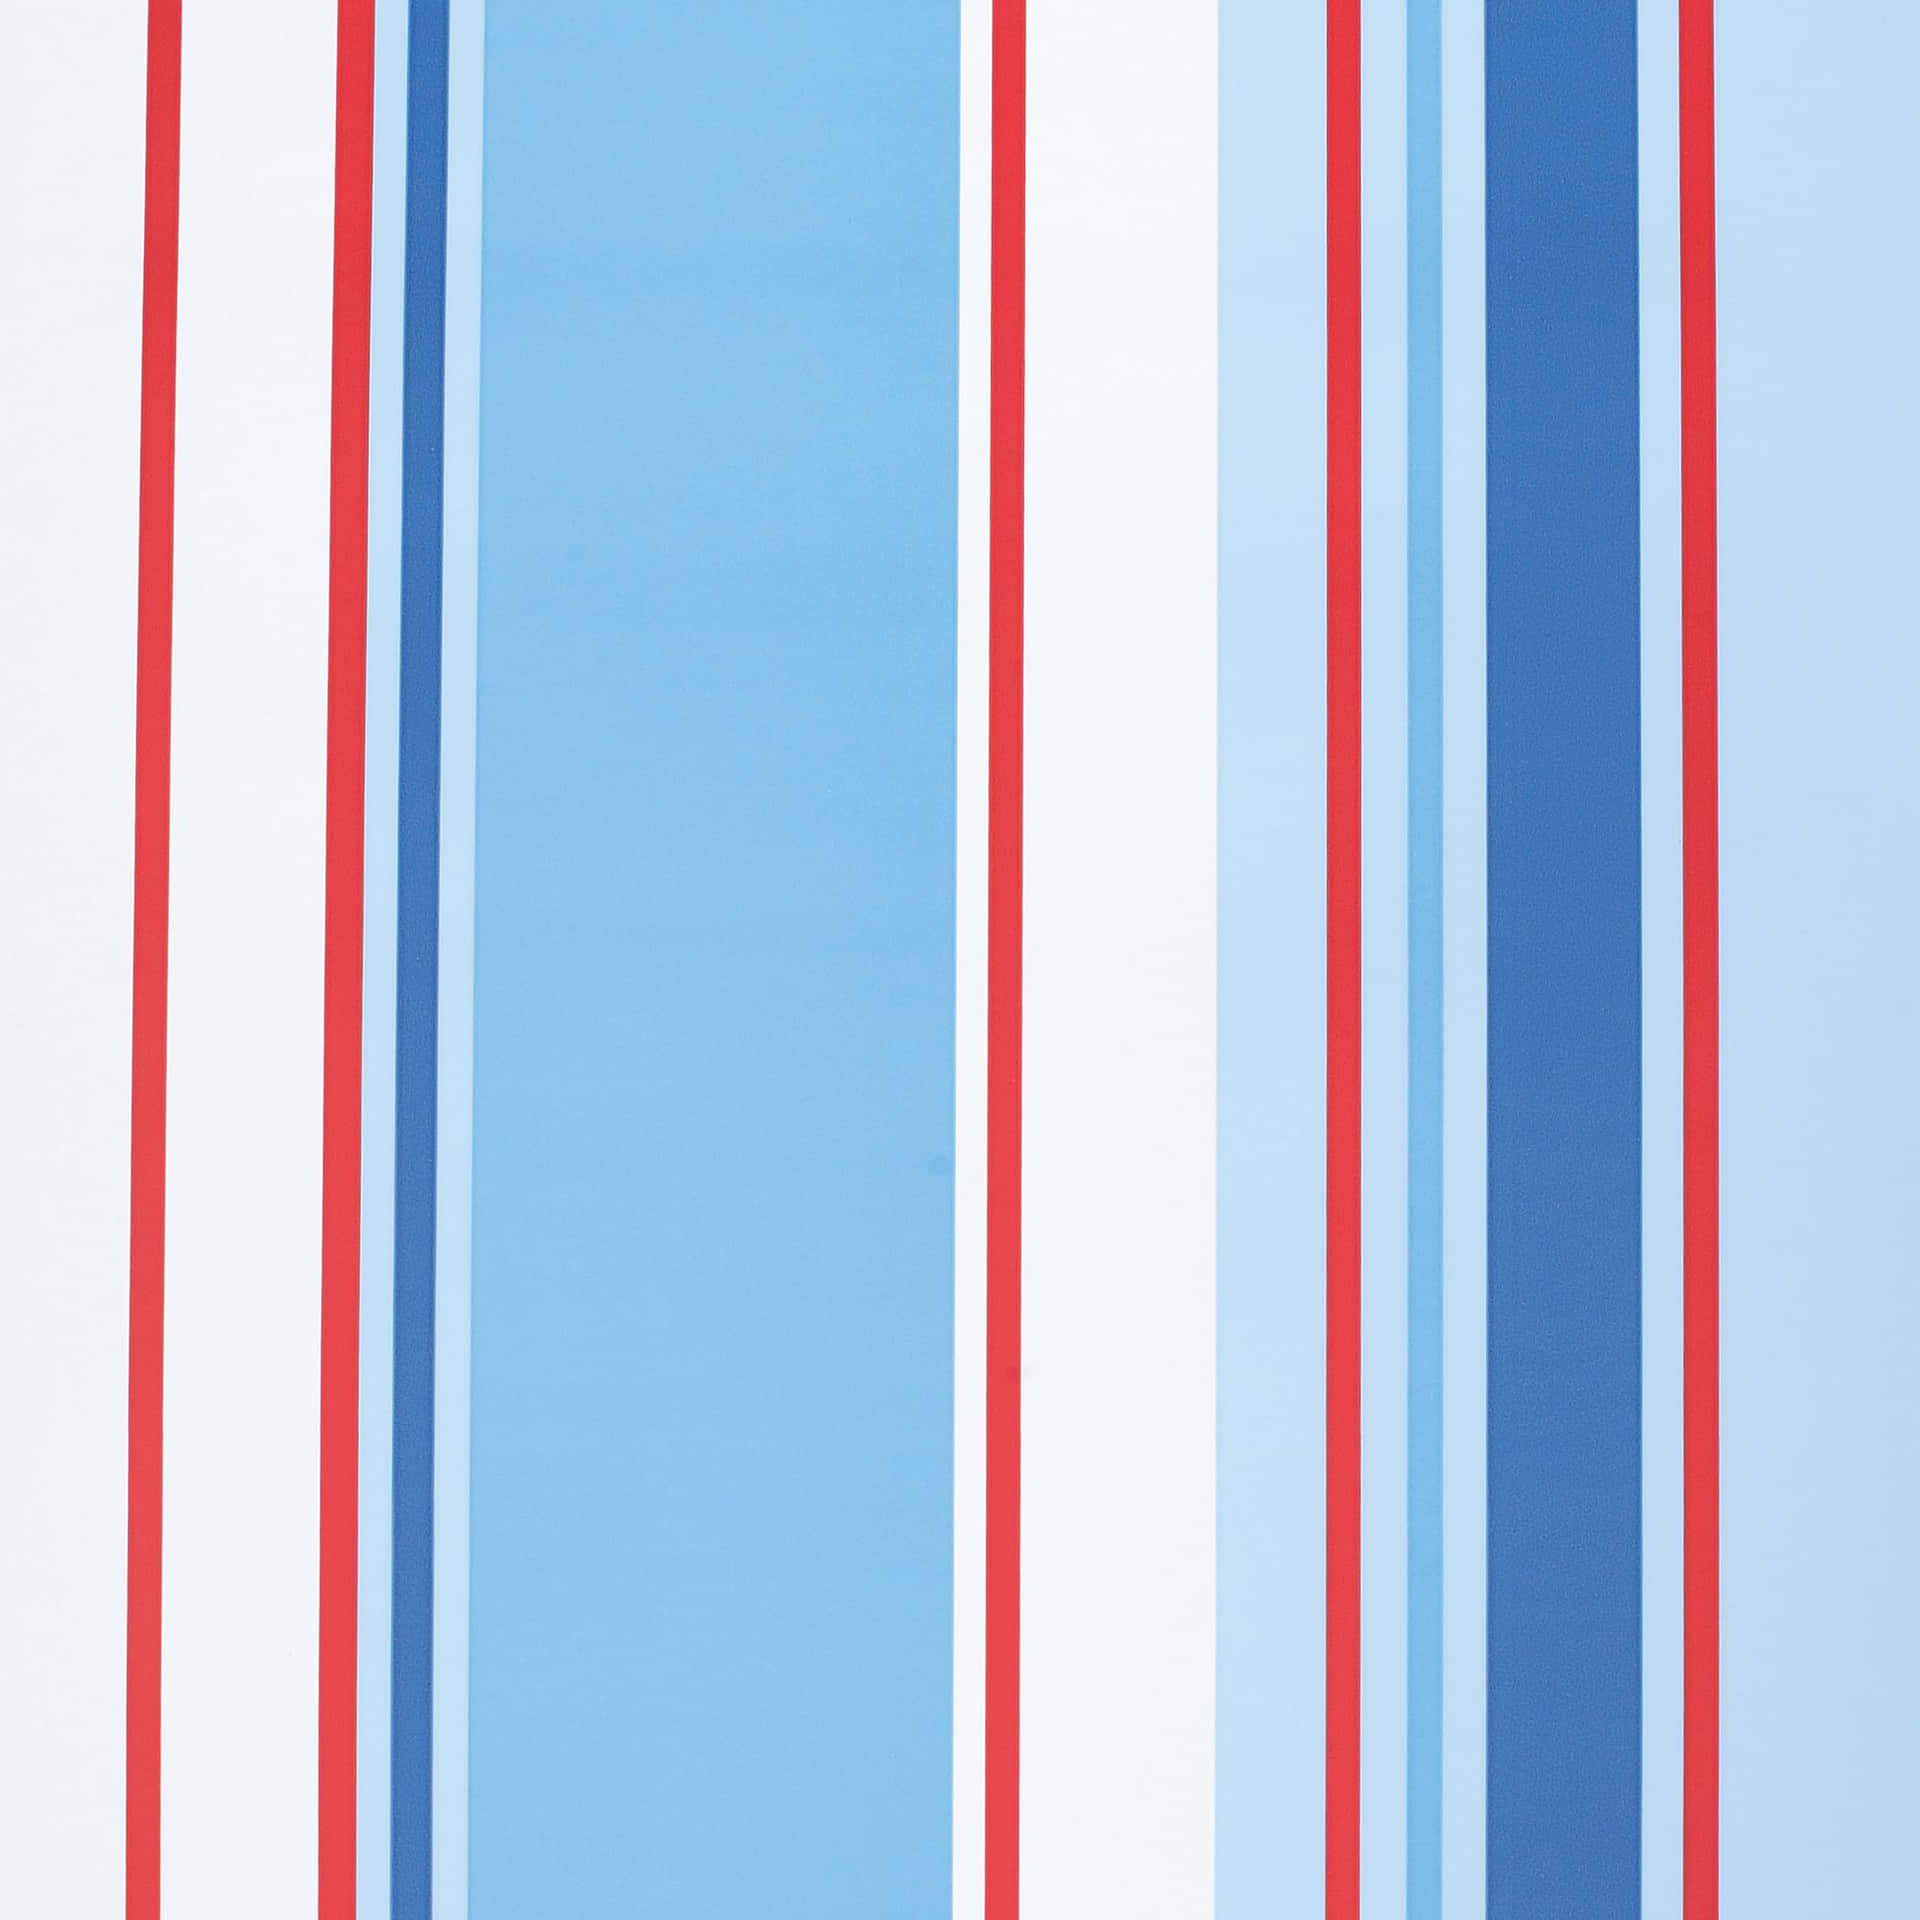 Vertikalelinien Und Balken Auf Einem Rot-weiß-blauen Hintergrund